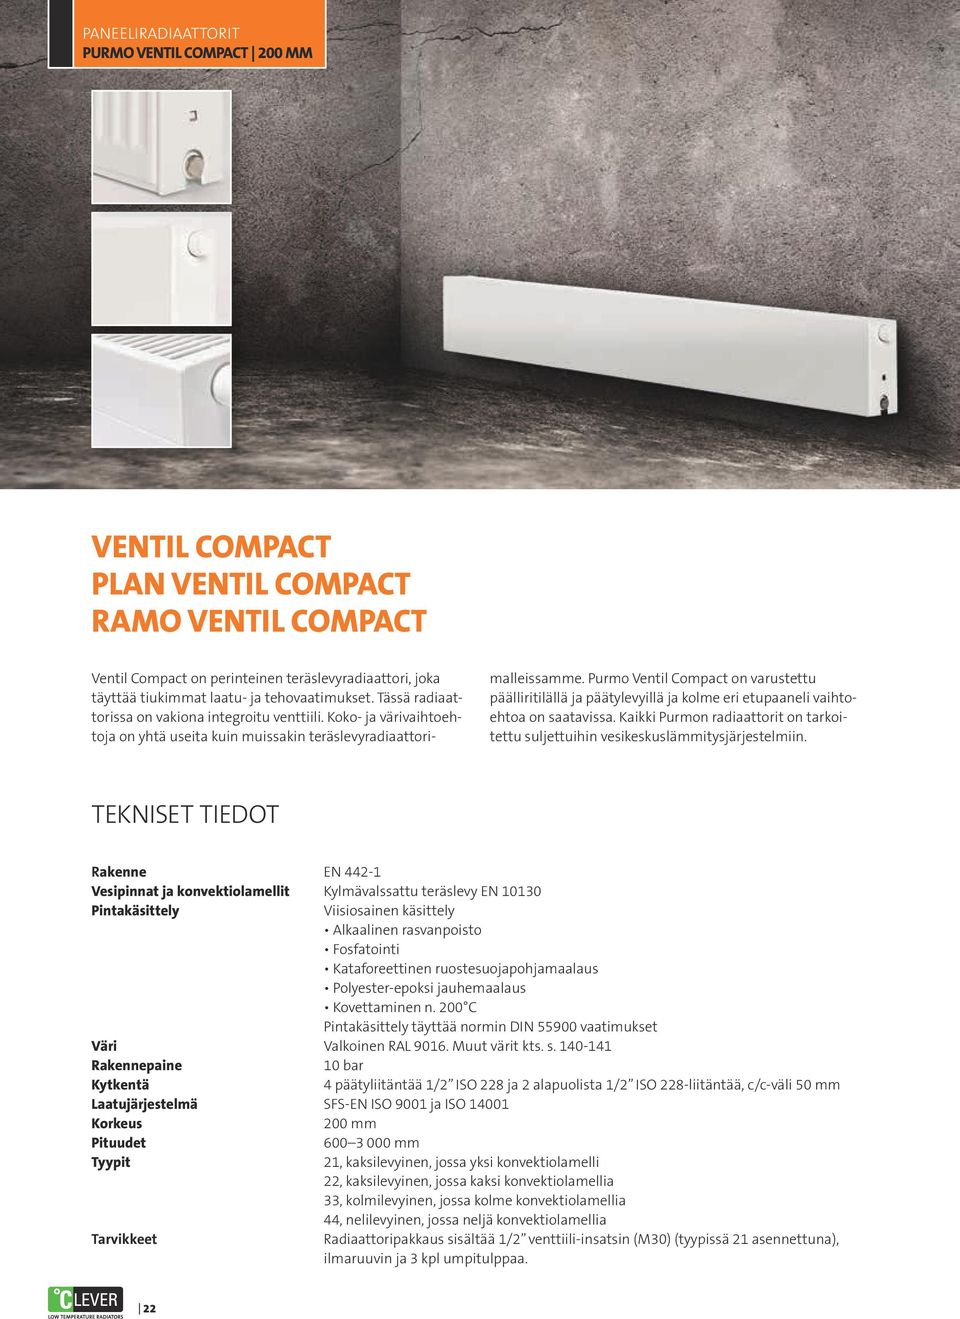 Purmo Ventil Compact on varustettu päälliritilällä ja päätylevyillä ja kolme eri etupaaneli vaihtoehtoa on saatavissa.